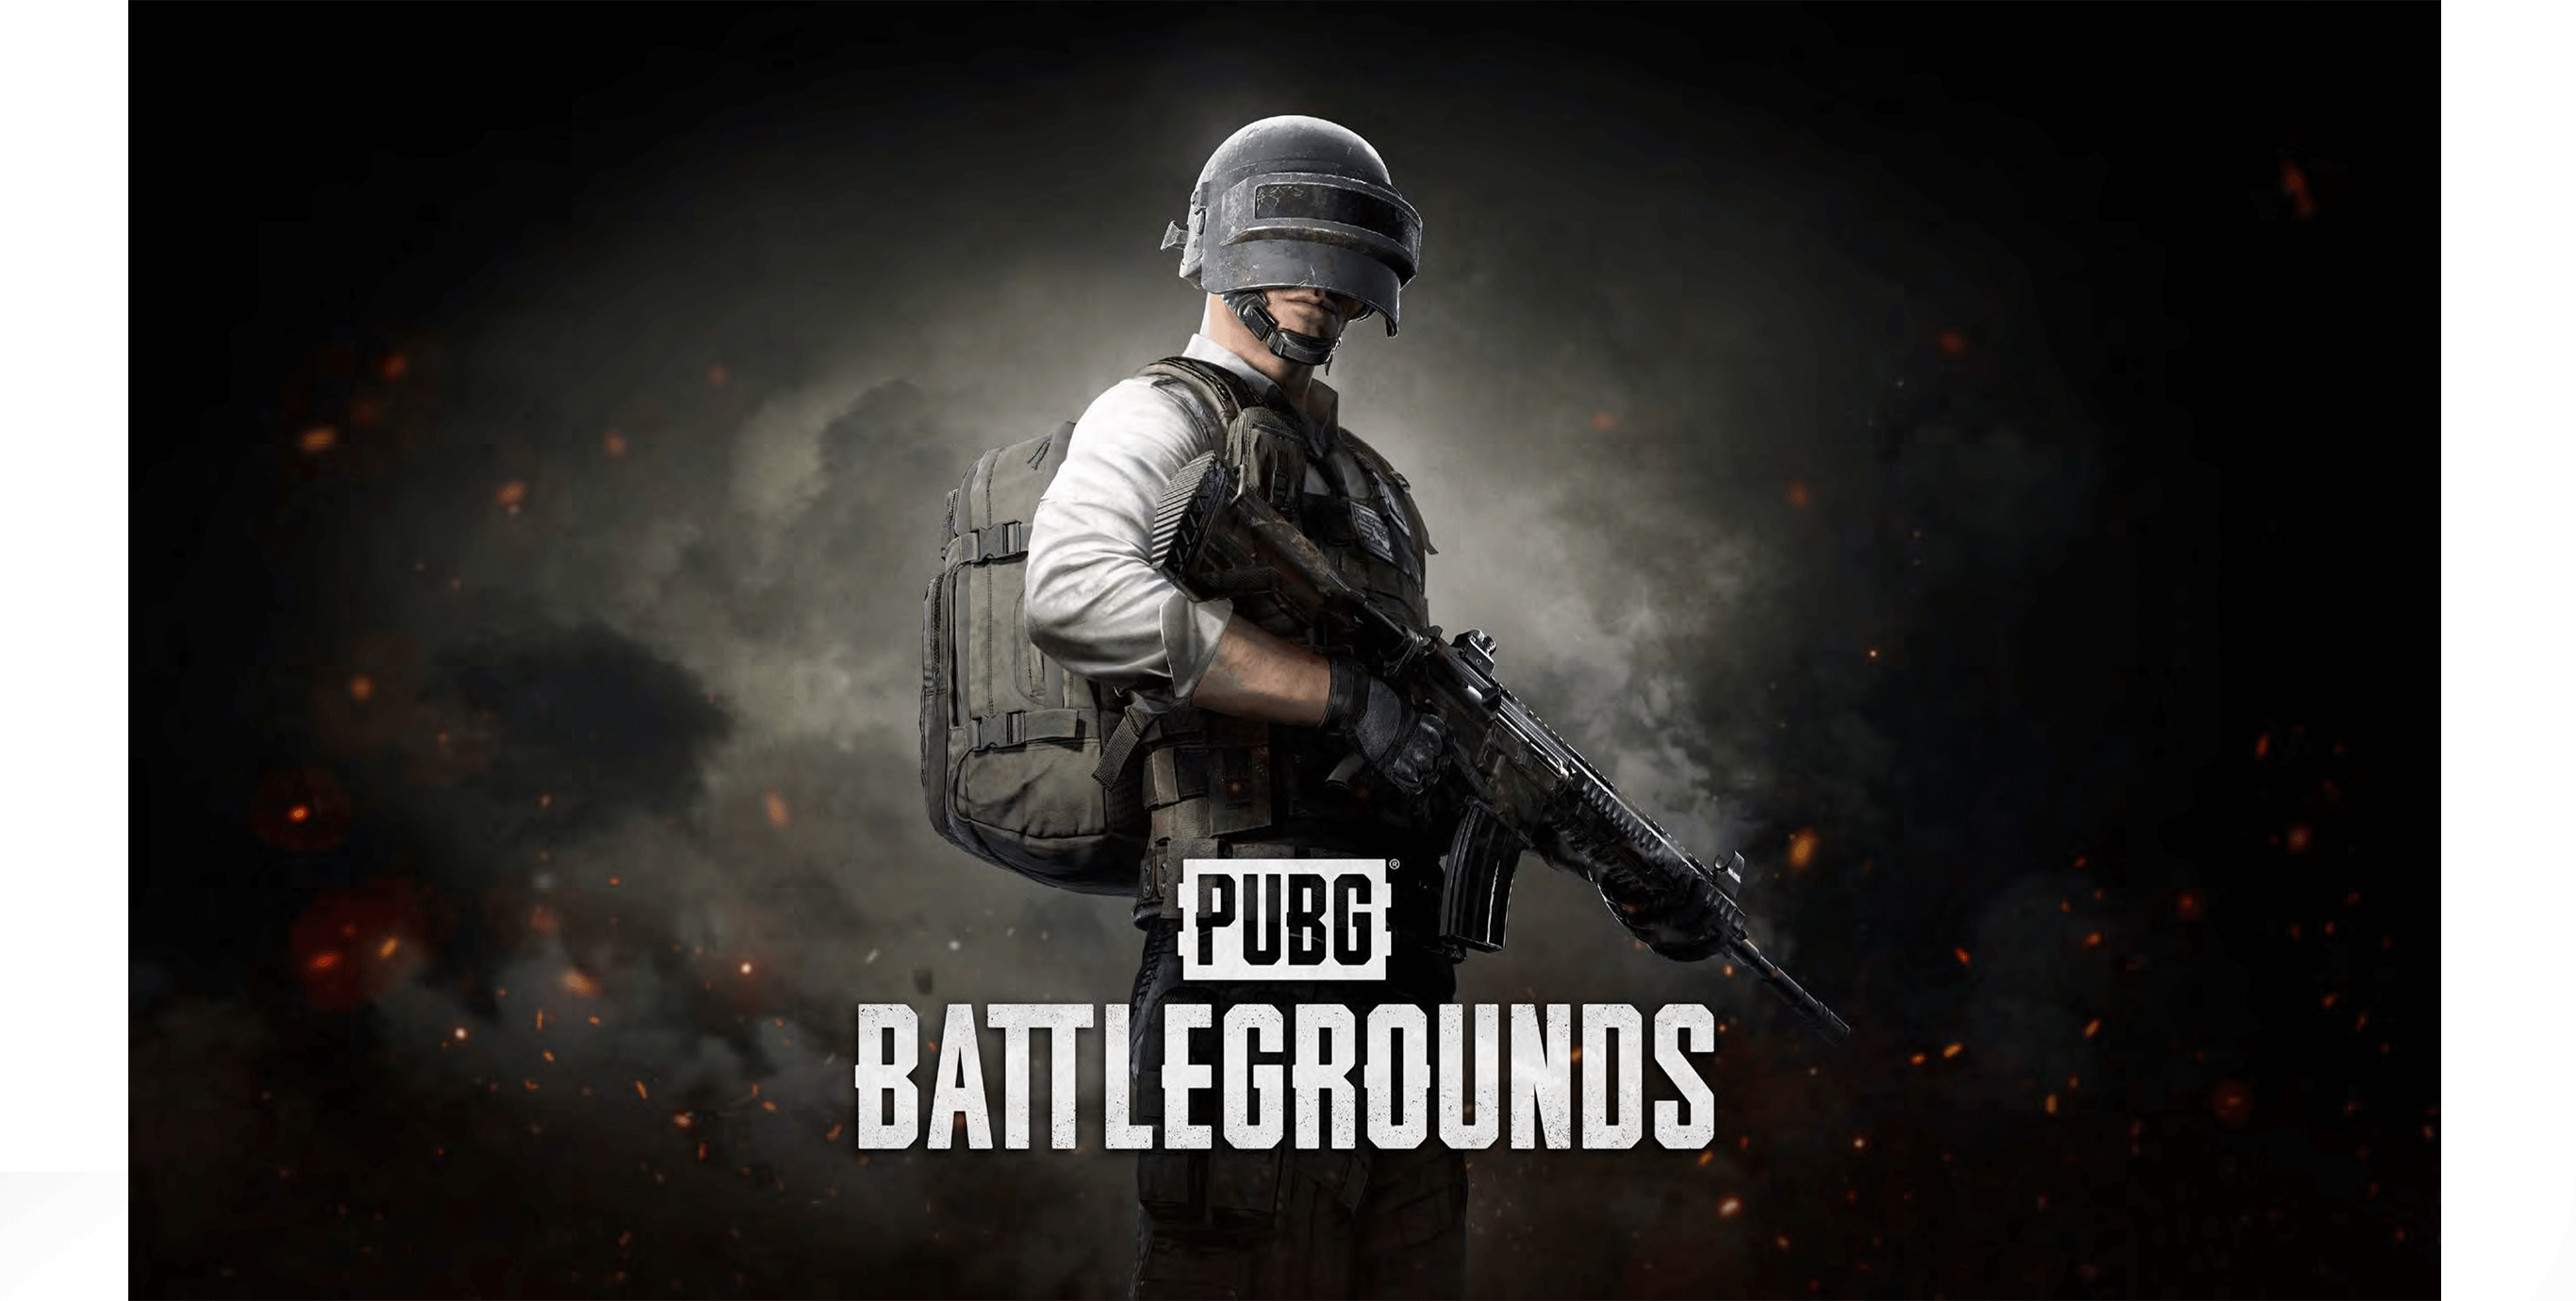 PUBG Battlegrounds cover art